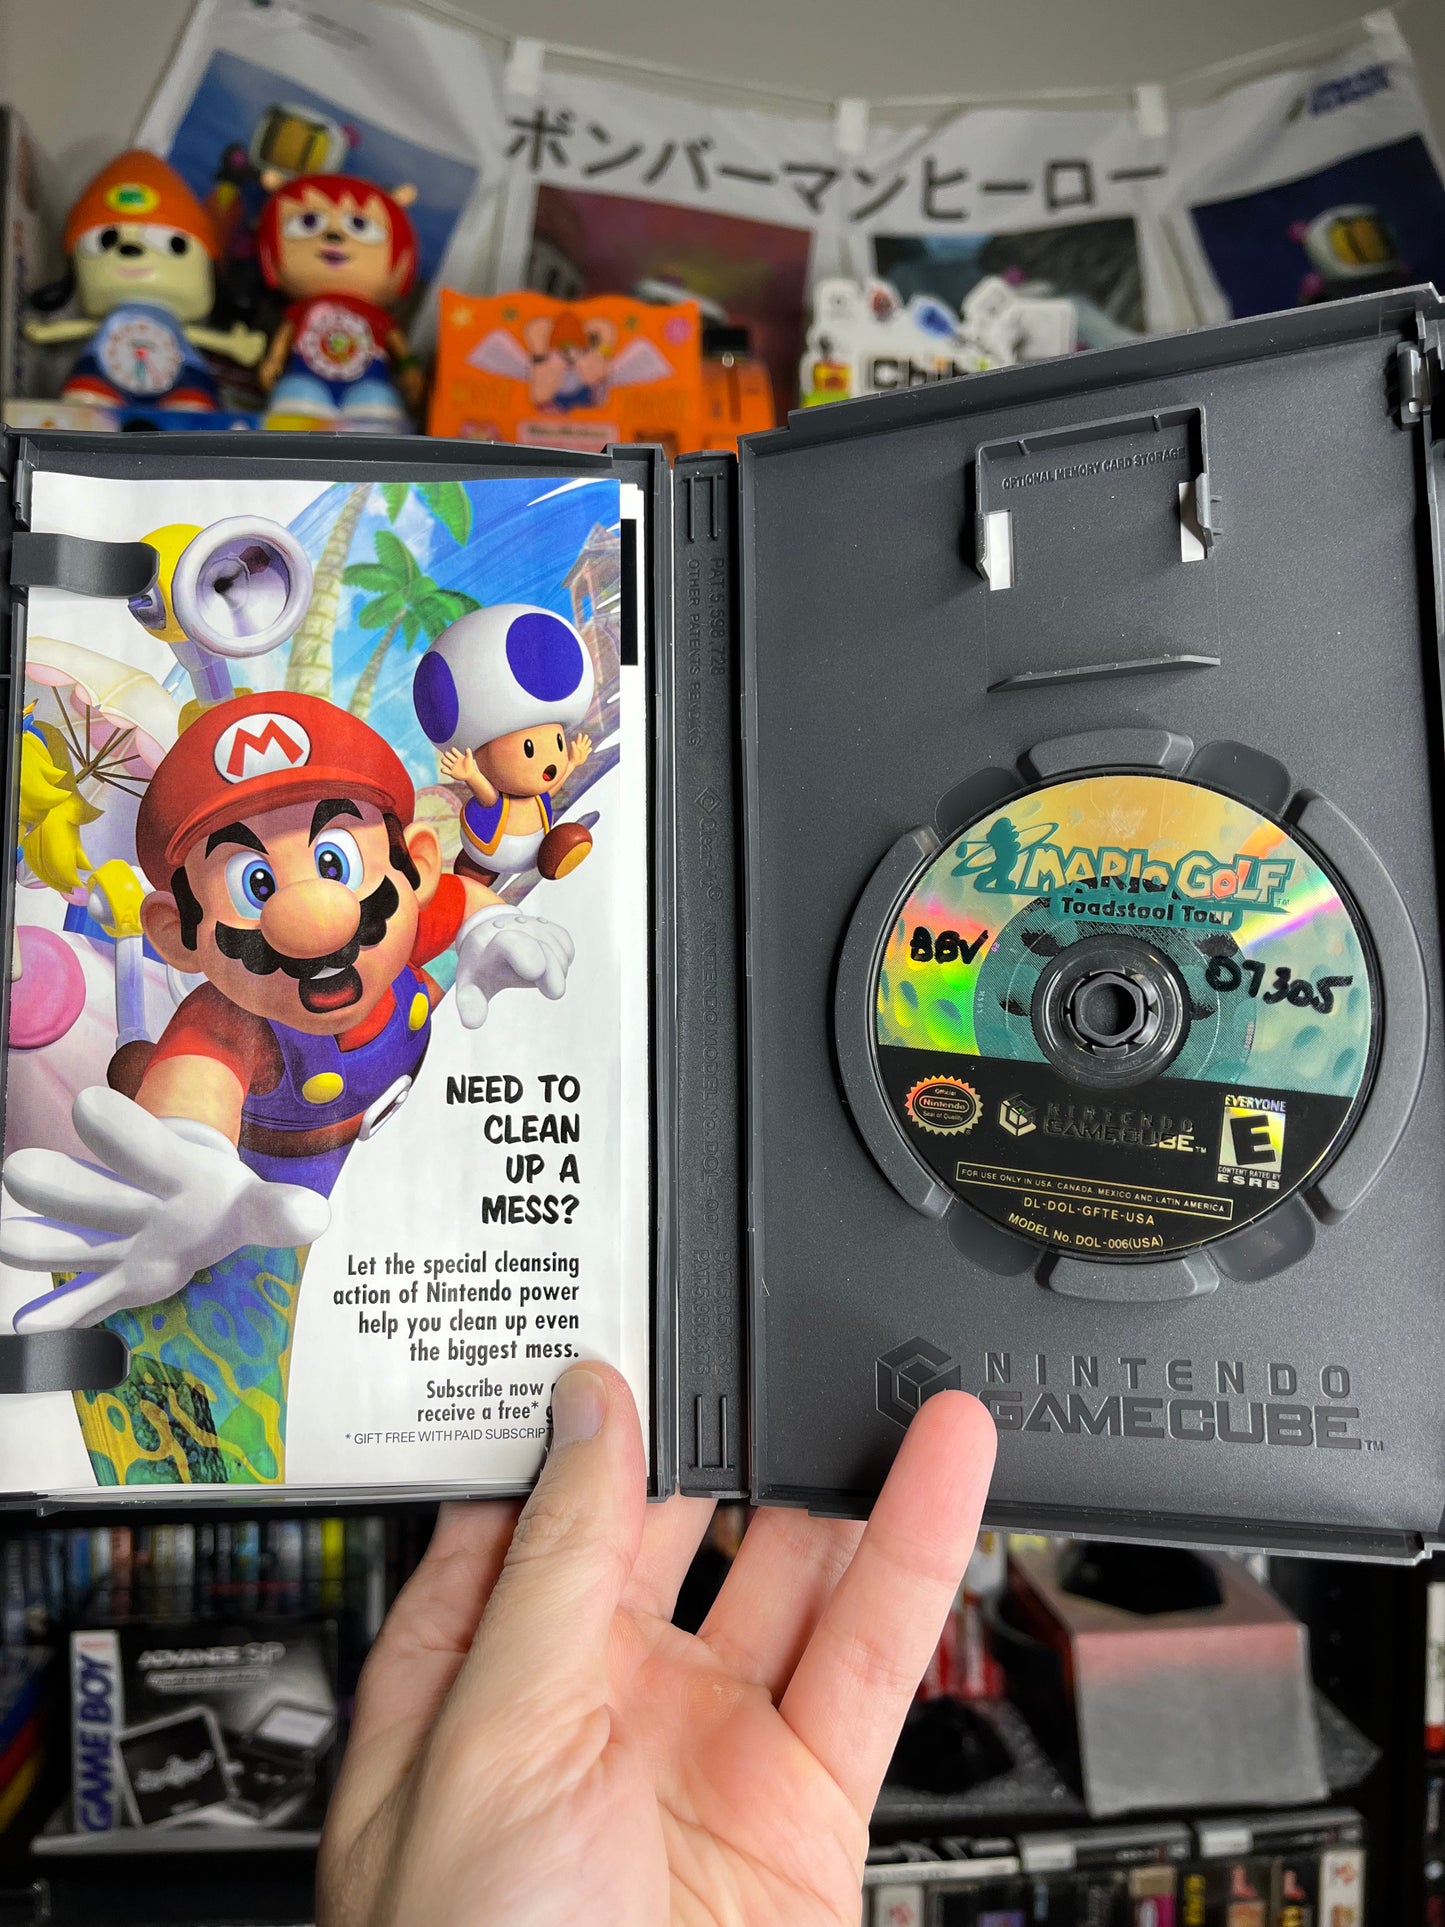 Mario Golf Toadstool Tour GameCube